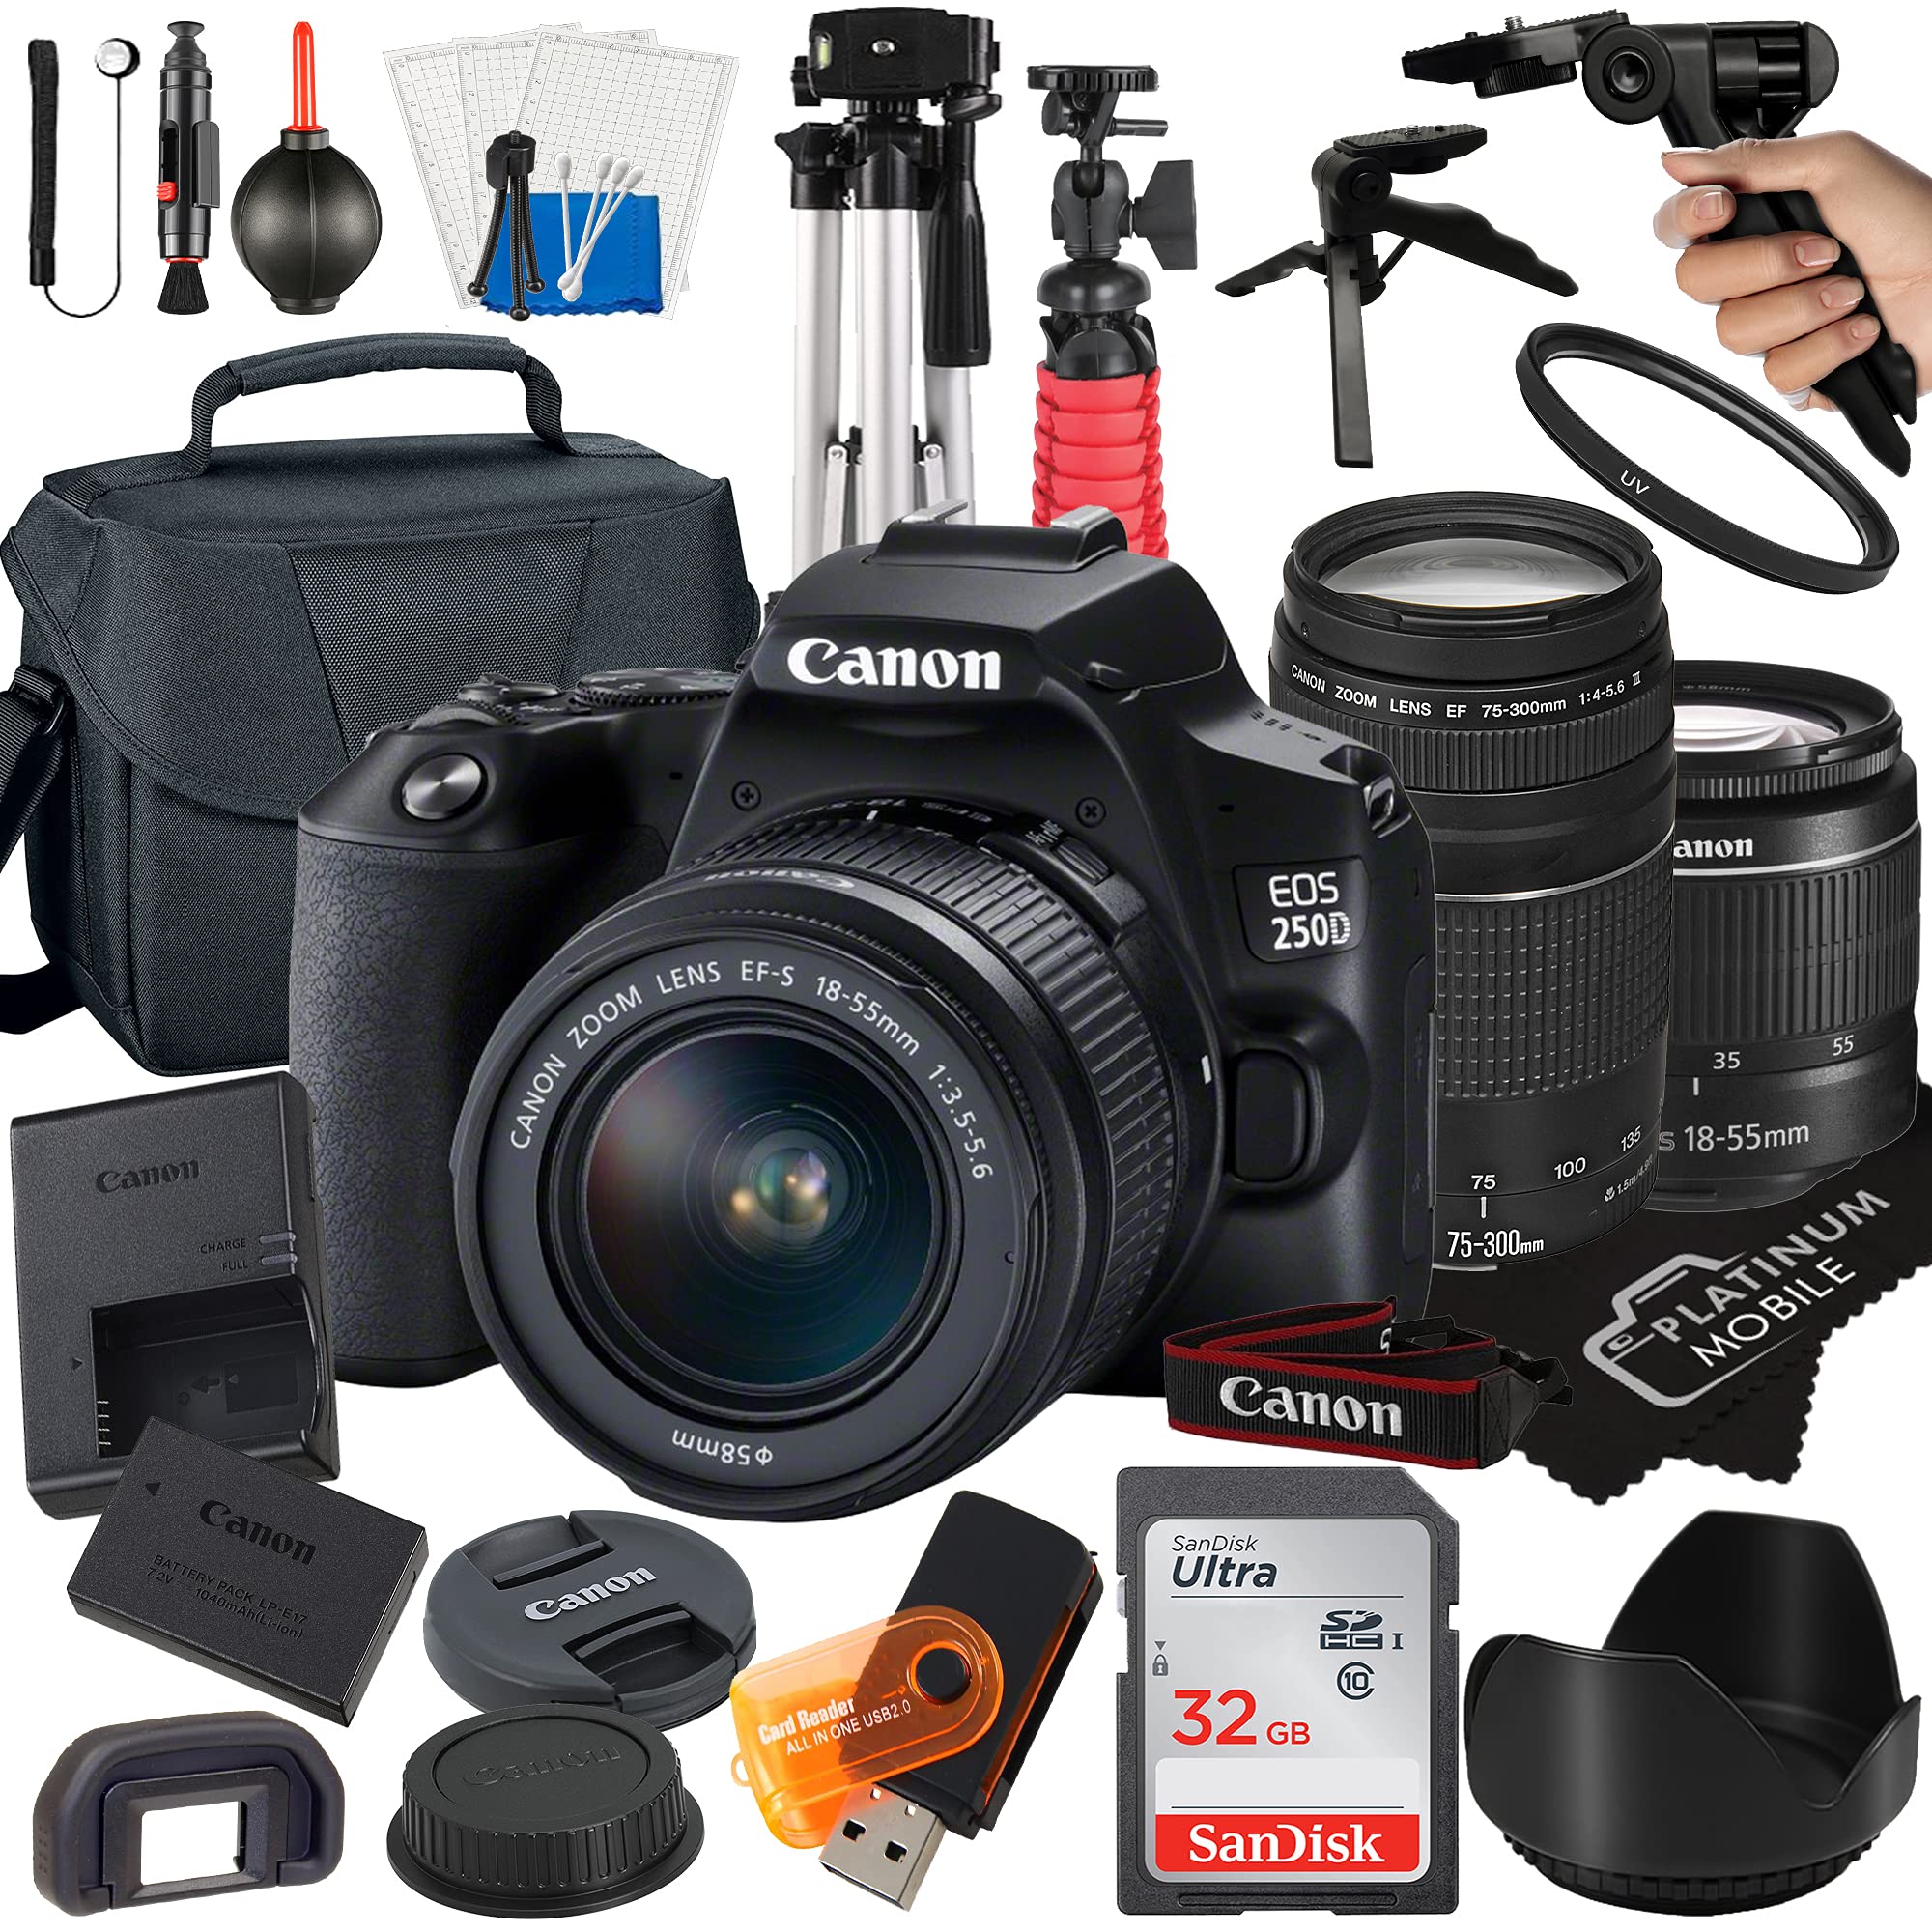 Canon EOS 250D / Rebel SL3 Digital SLR Camera 24.1MP CMOS Sensor with EF-S 18-55mm + EF 75-300mm Lens + SanDisk 32GB Card + Tripod + Case + MegaAcc...